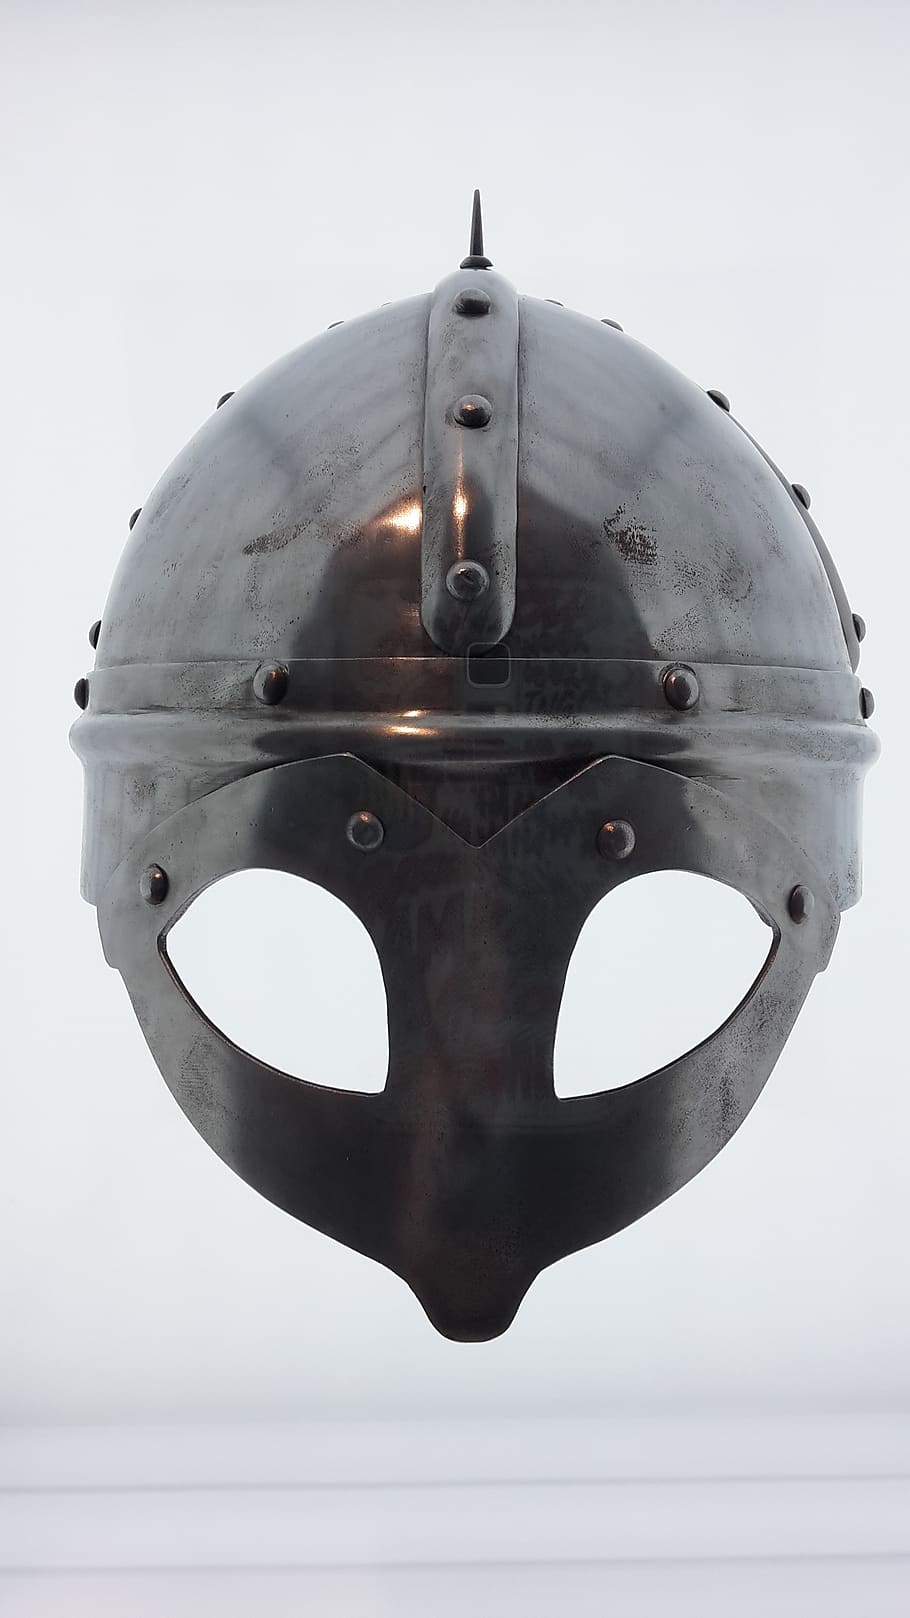 викинг, шлем, рыцарь, средневековье, крупный план, нет людей, Металл, В помещении, Студийный снимок, безопасность